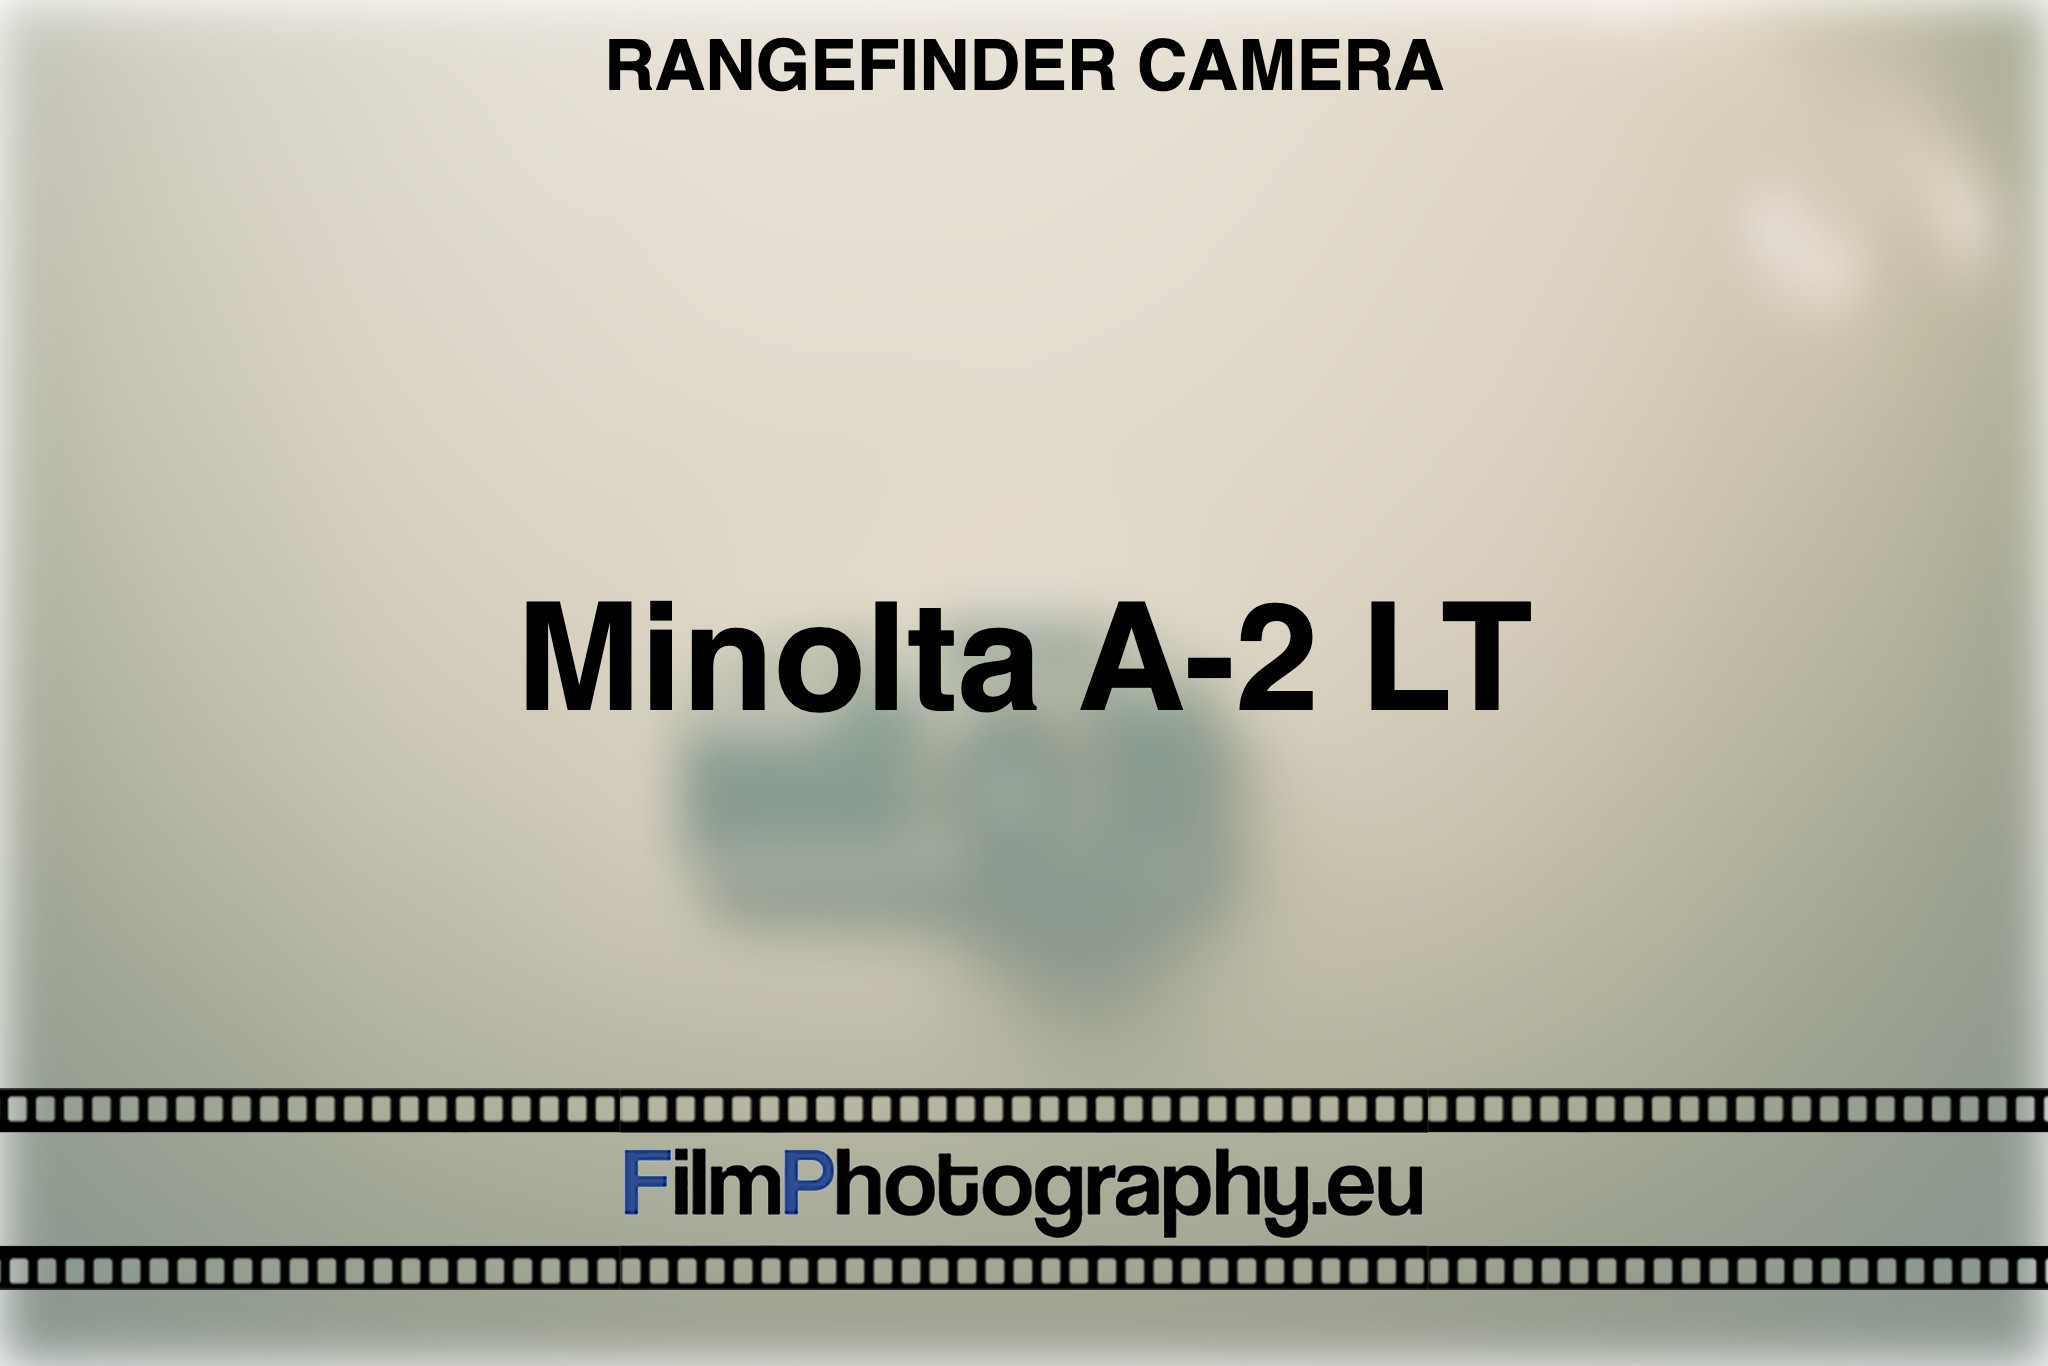 minolta-a-2-lt-rangefinder-camera-bnv